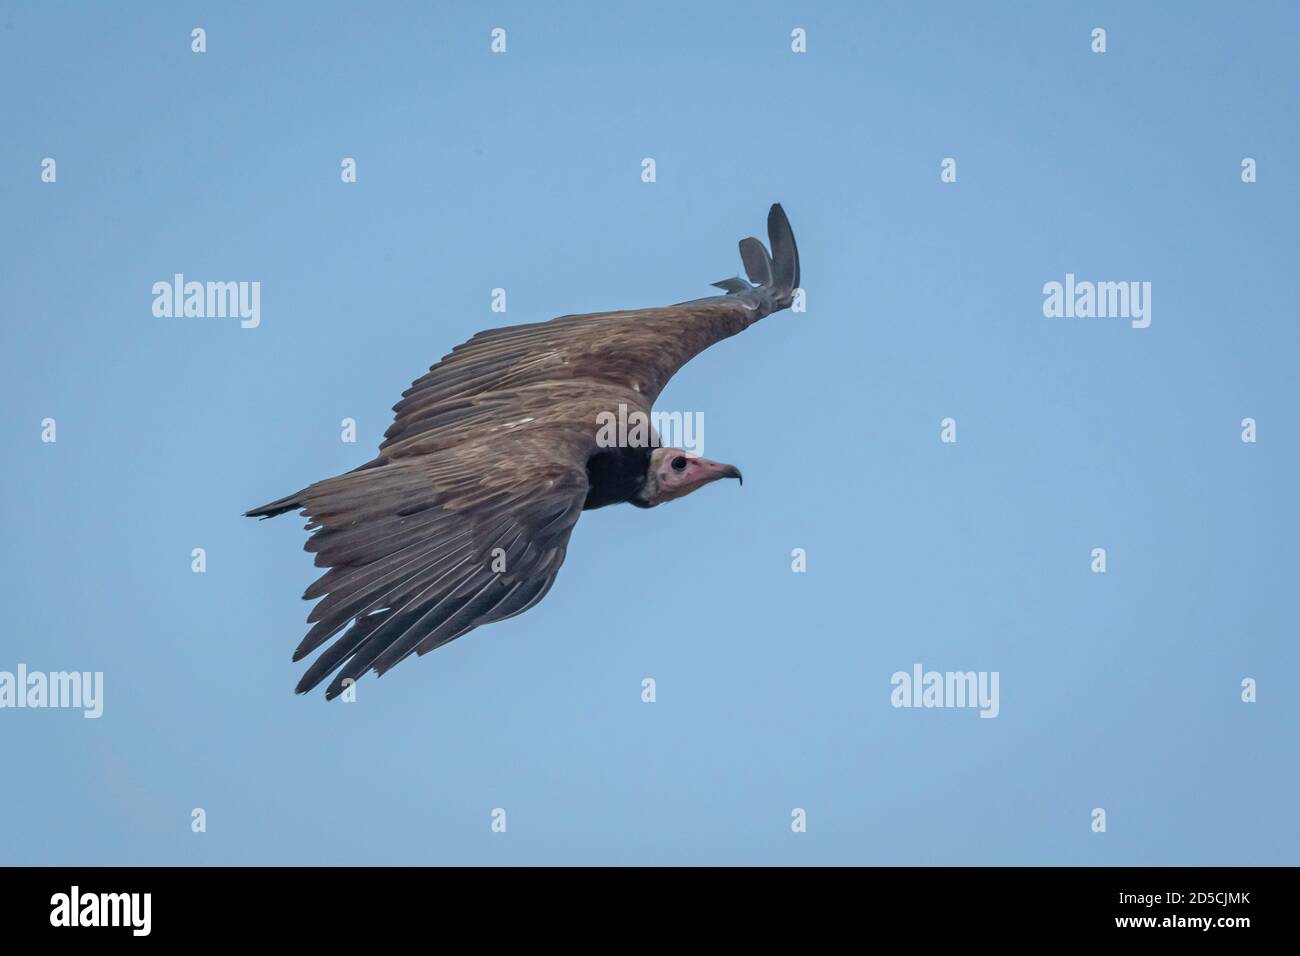 Il avvoltoio con cappuccio (Necrosyrtes monachus) è un avvoltoio del Vecchio mondo nell'ordine Accipitrifores, che comprende anche aquile, aquile, aquile, poiane e falchi. Foto Stock